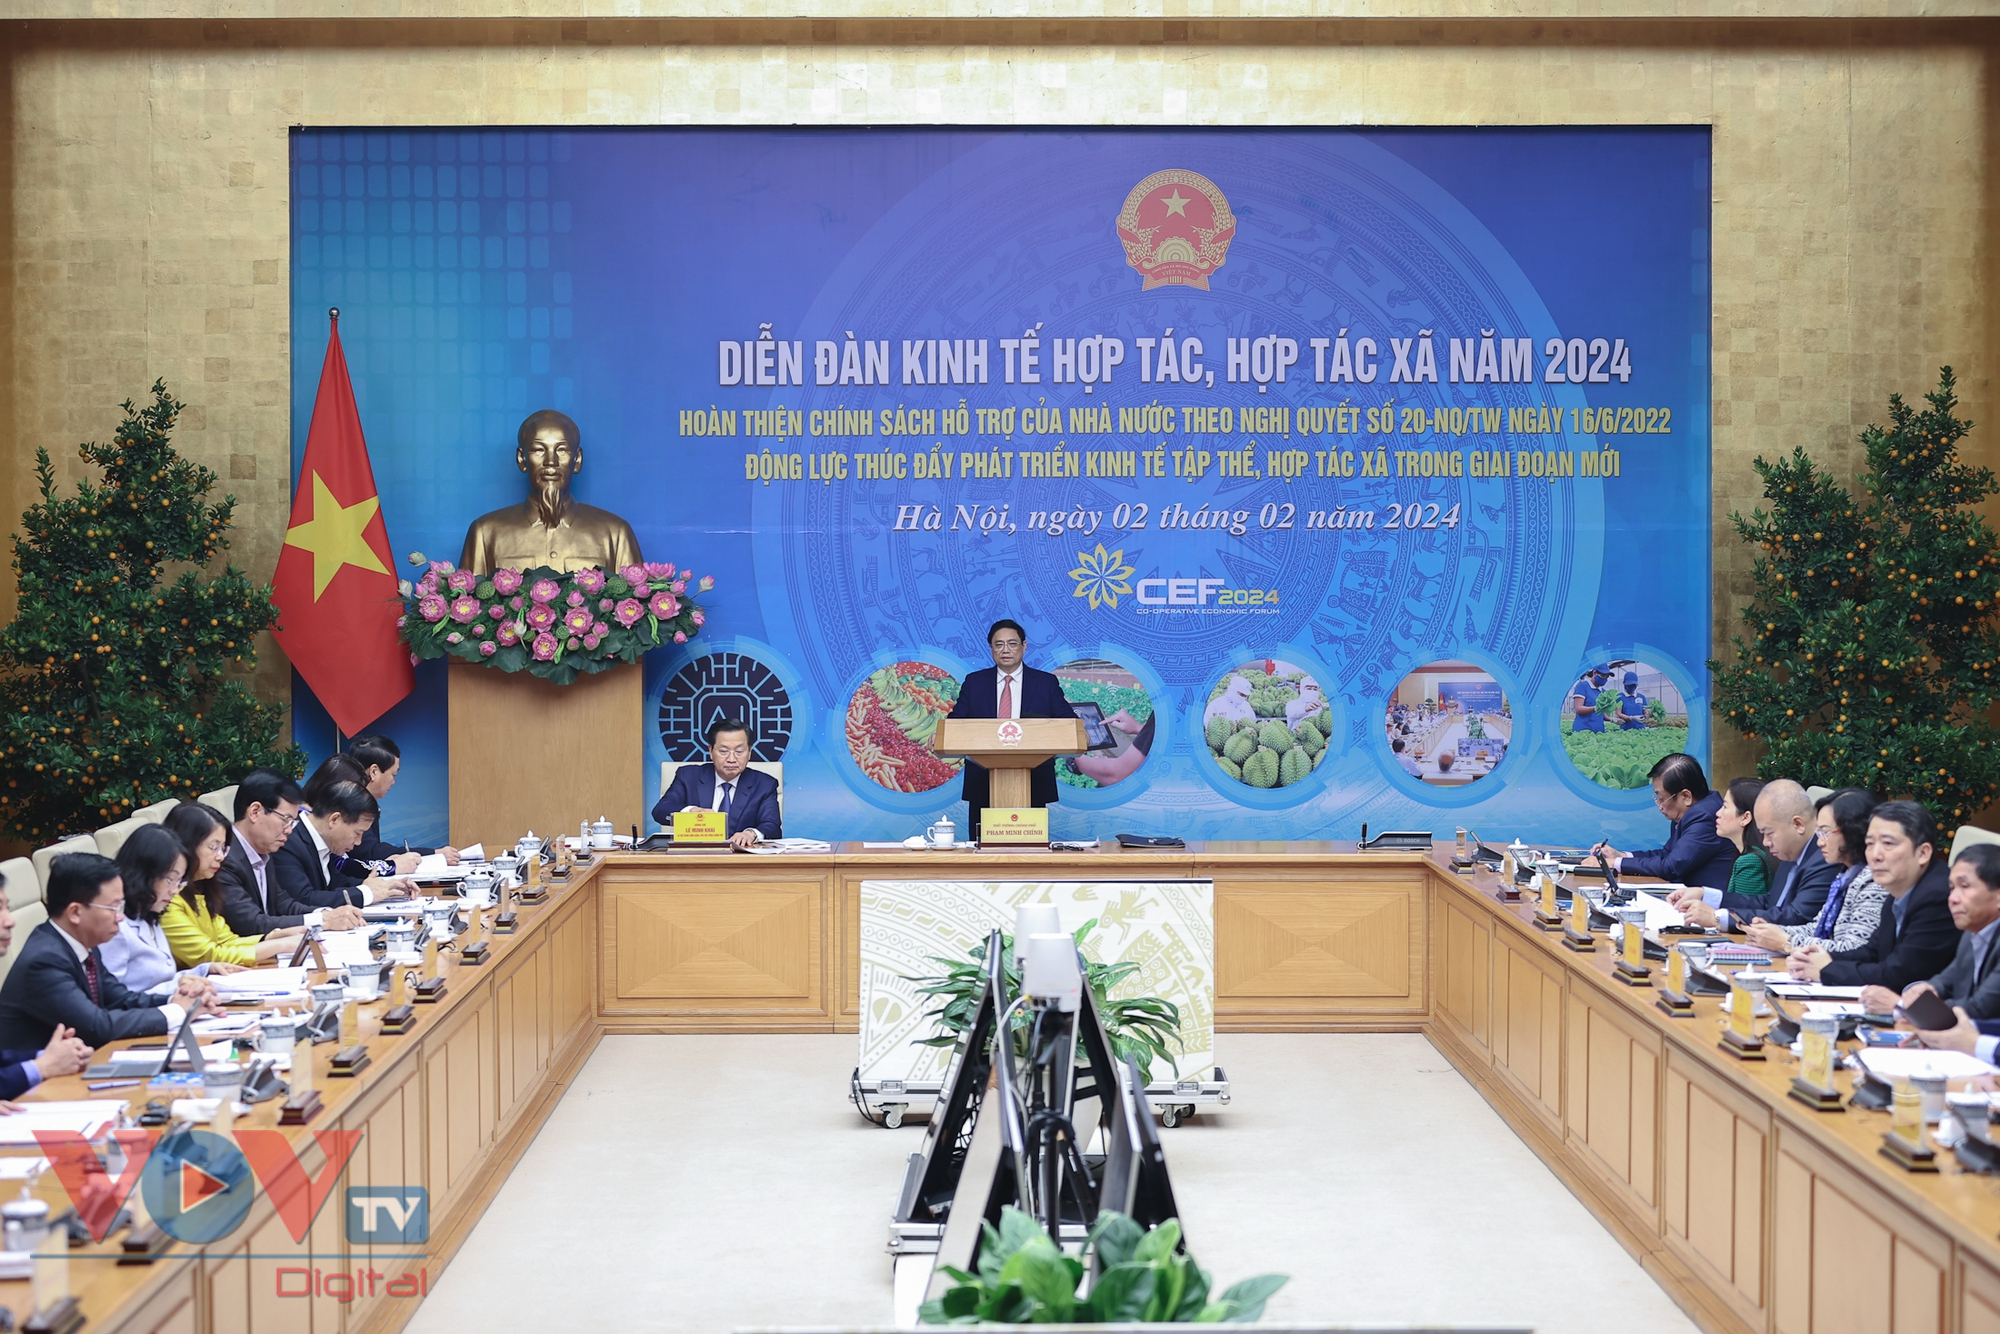 Thủ tướng Phạm Minh Chính chủ trì Diễn đàn kinh tế hợp tác, hợp tác xã năm 2024- Ảnh 2.